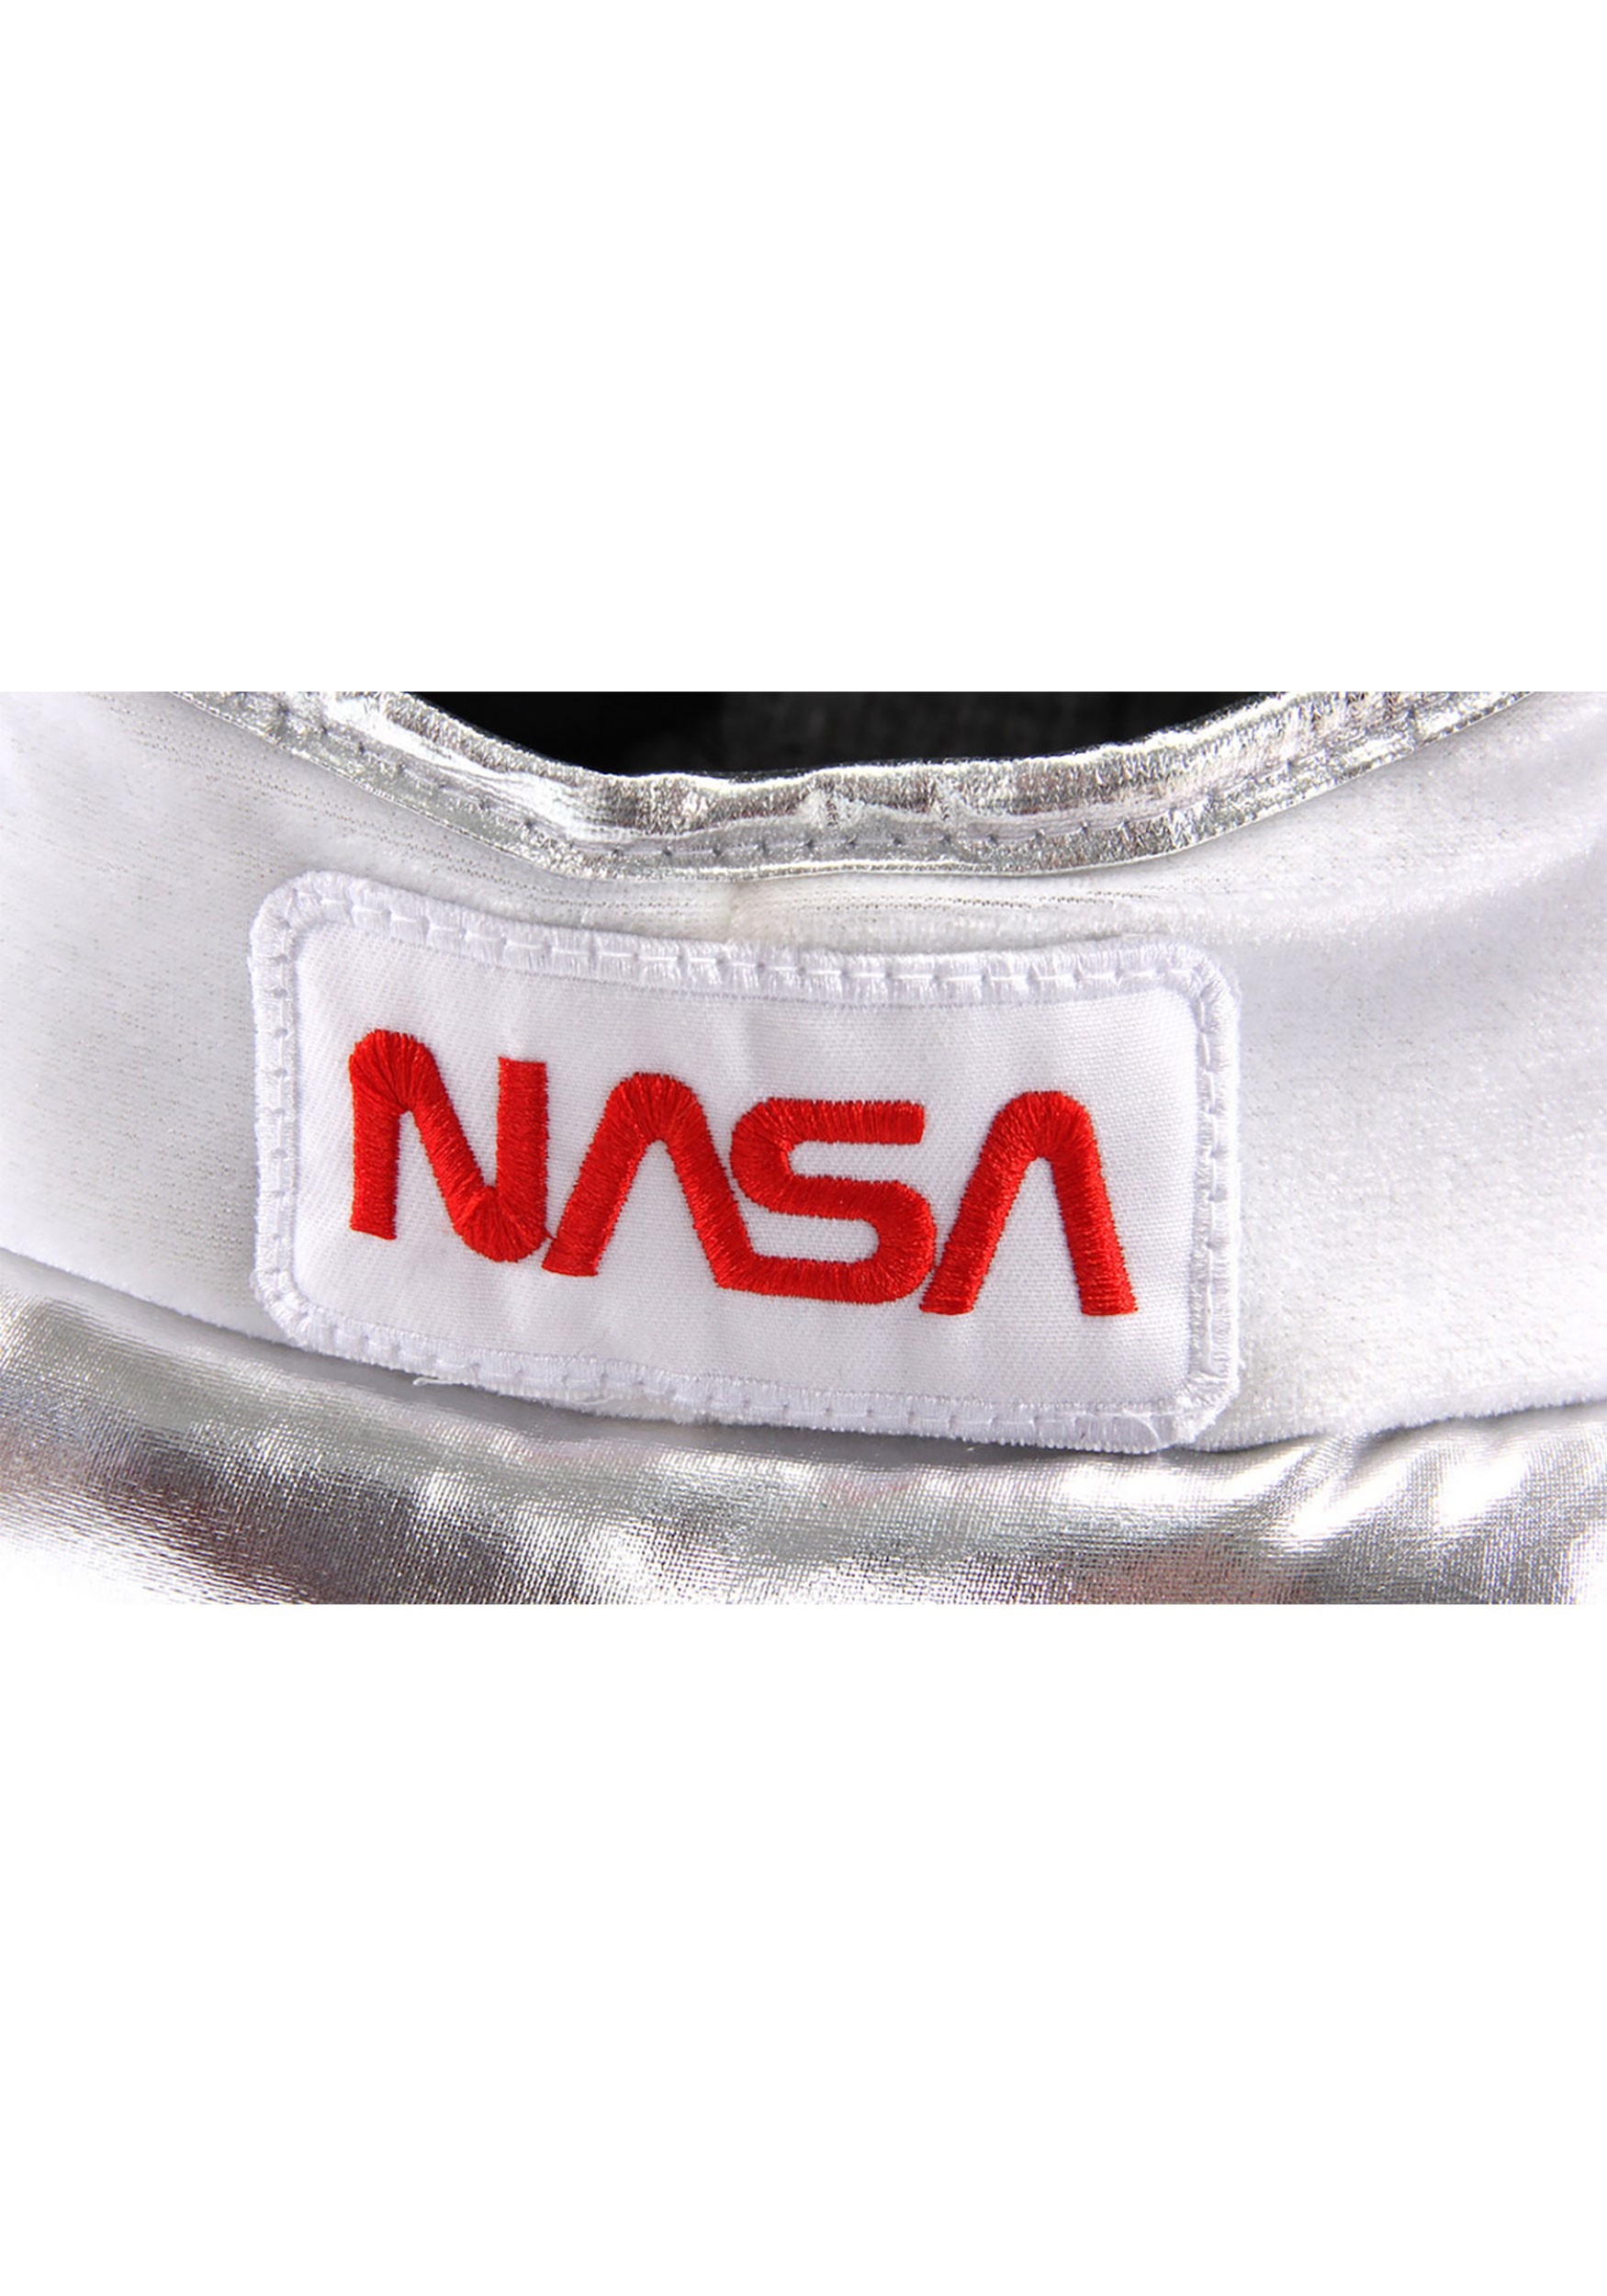 Space Plush Costume Helmet For Kids